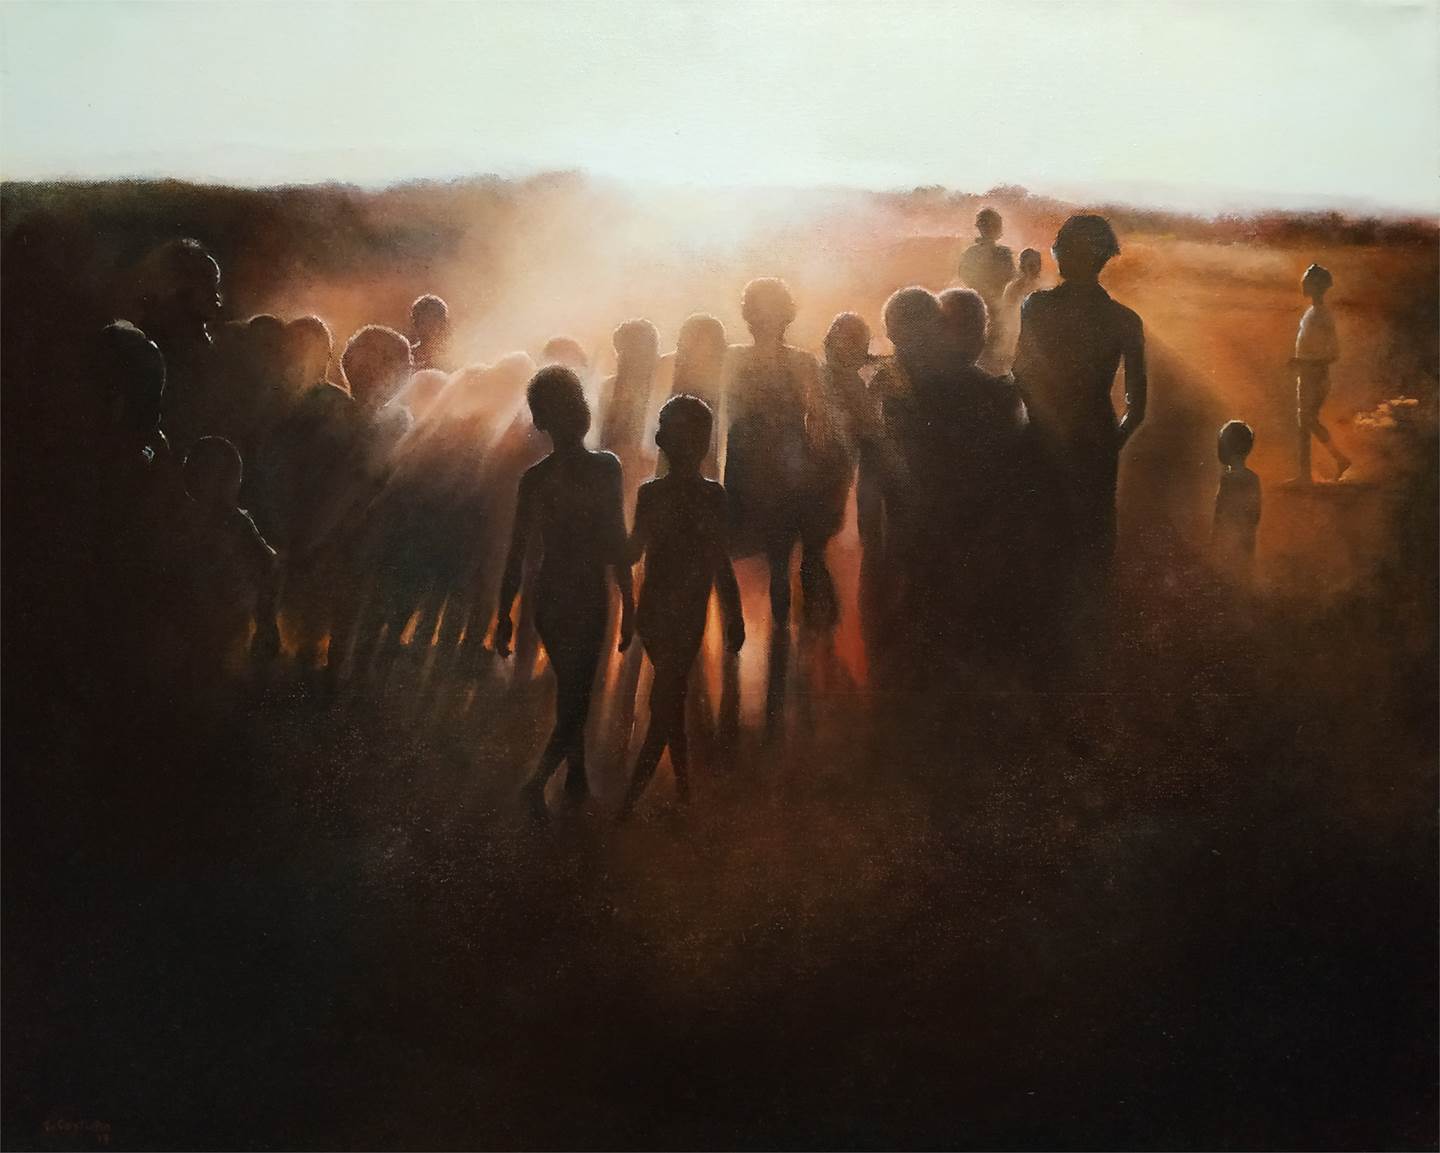 Danzando al ponerse el sol, original Landscape Oil Painting by TOMAS CASTAÑO